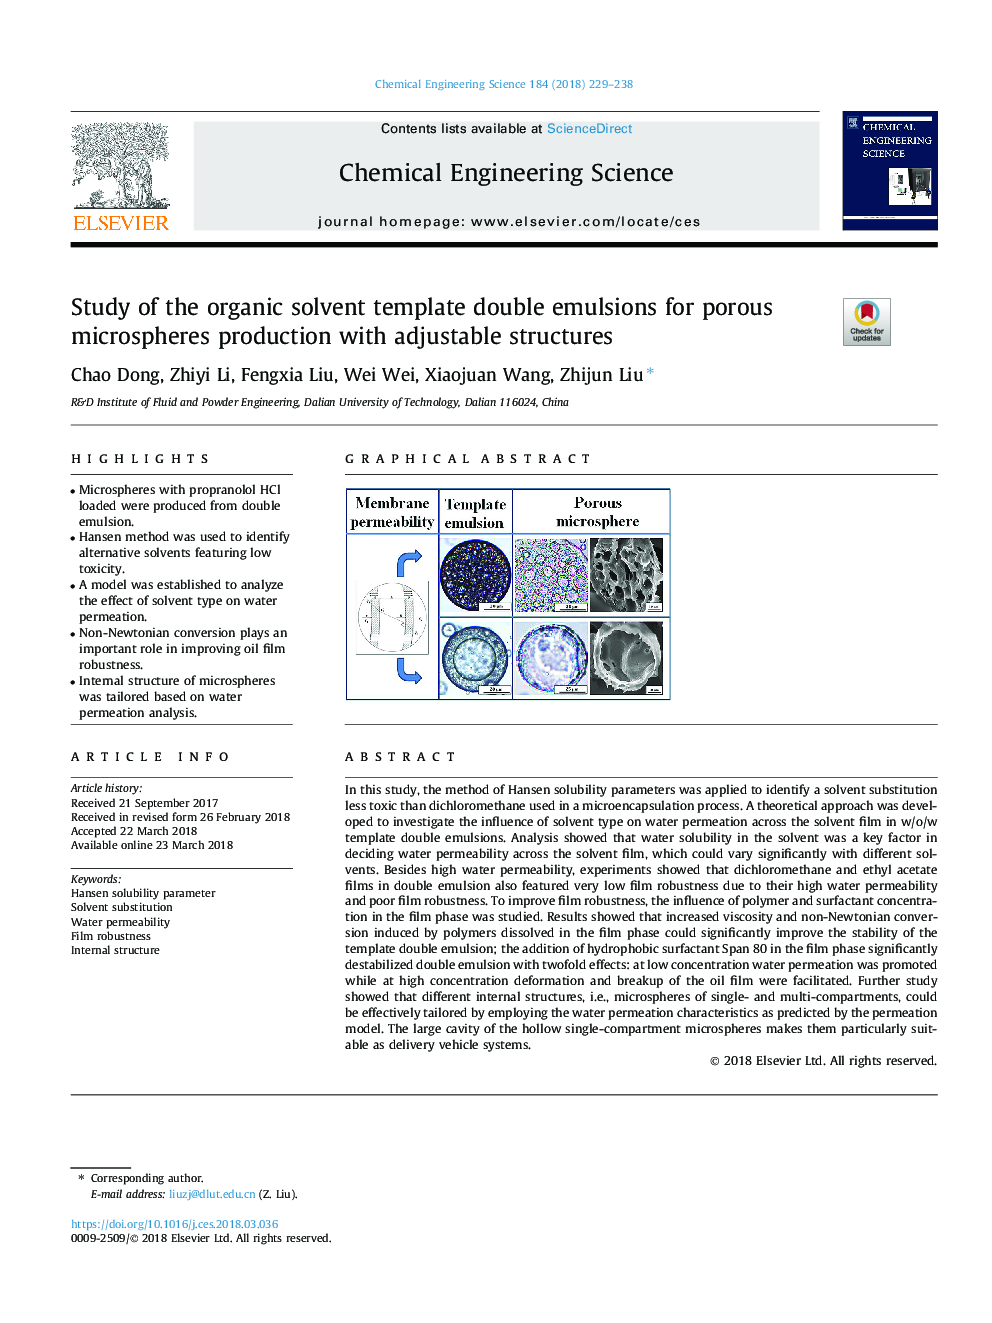 مطالعه امولسیون های دو حلقه ای ارگانیک برای تولید میکروسفیر متخلخل با سازه های قابل تنظیم 